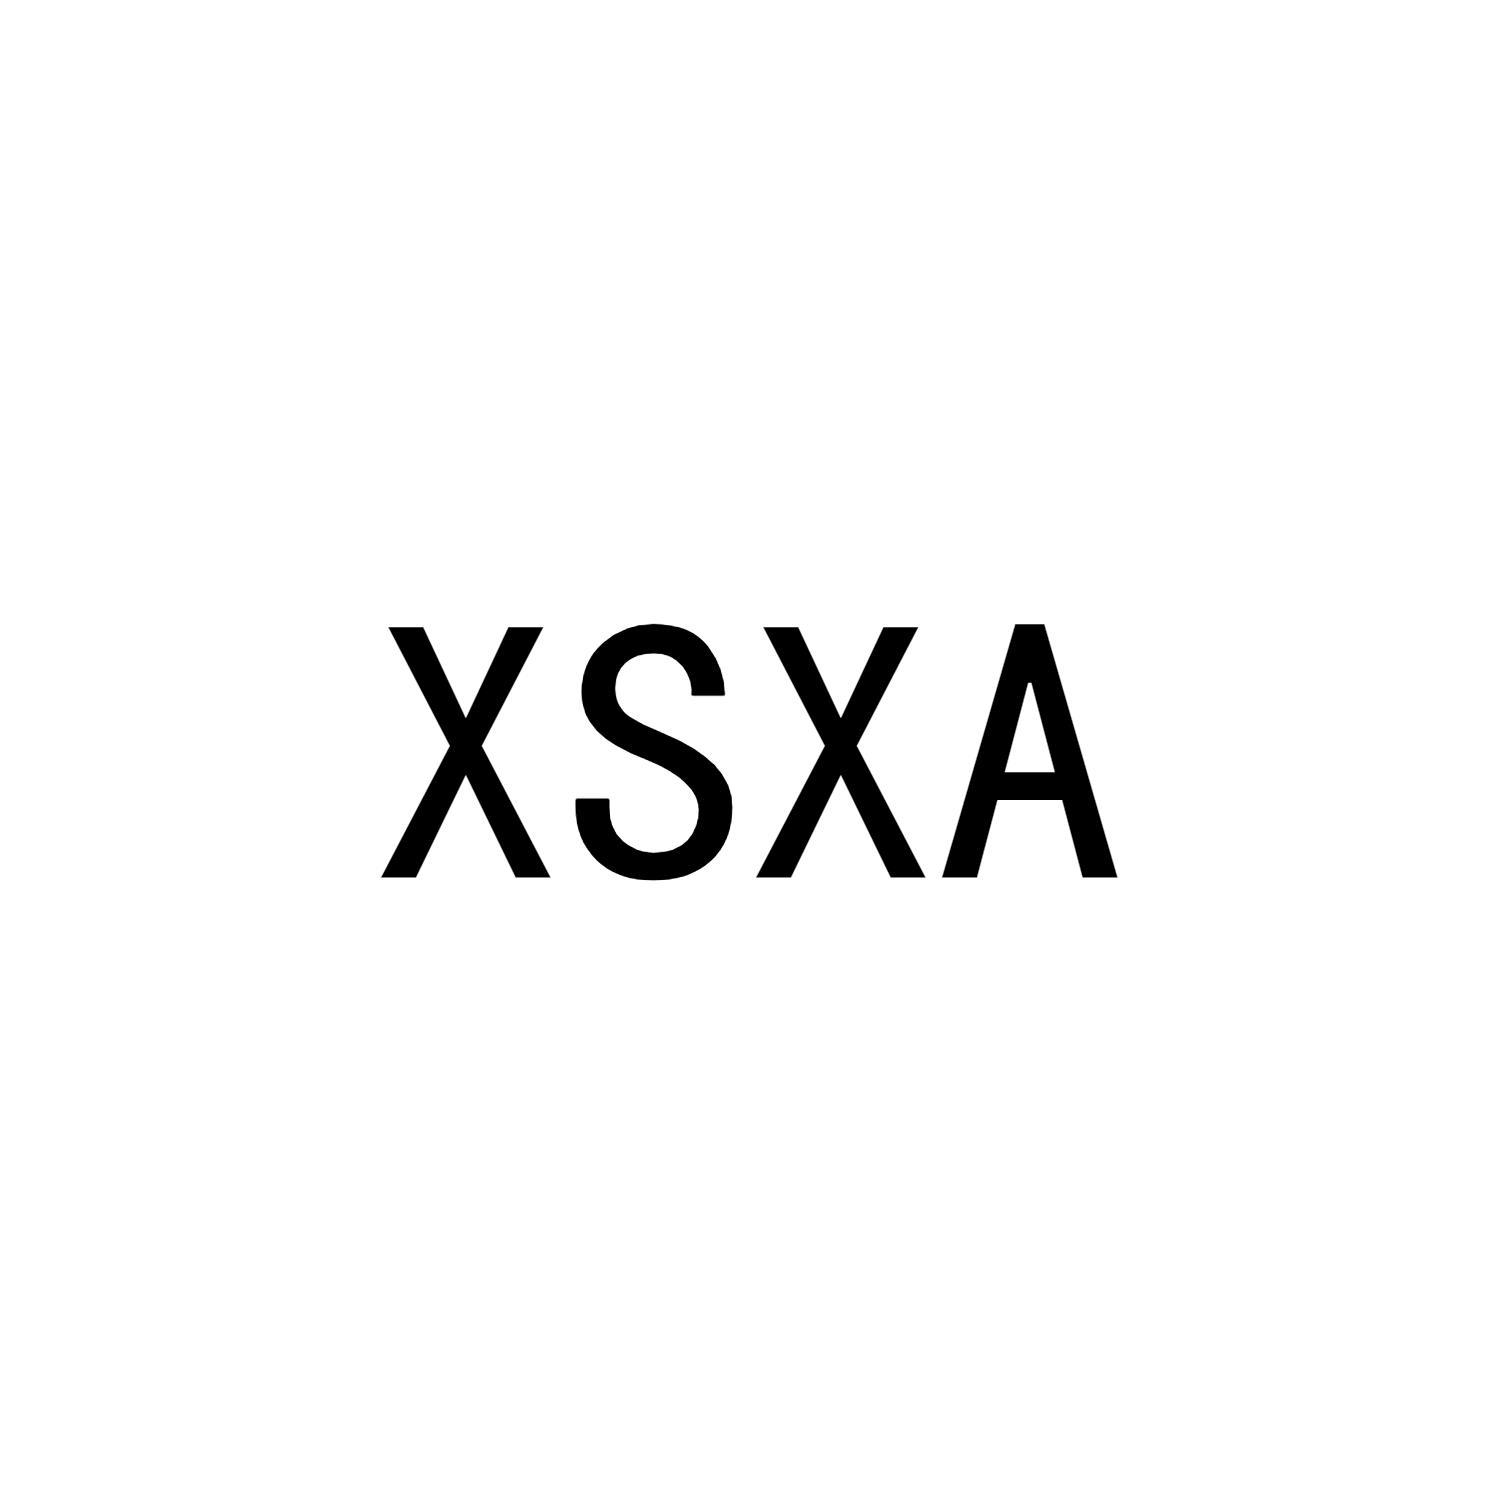 XSXA